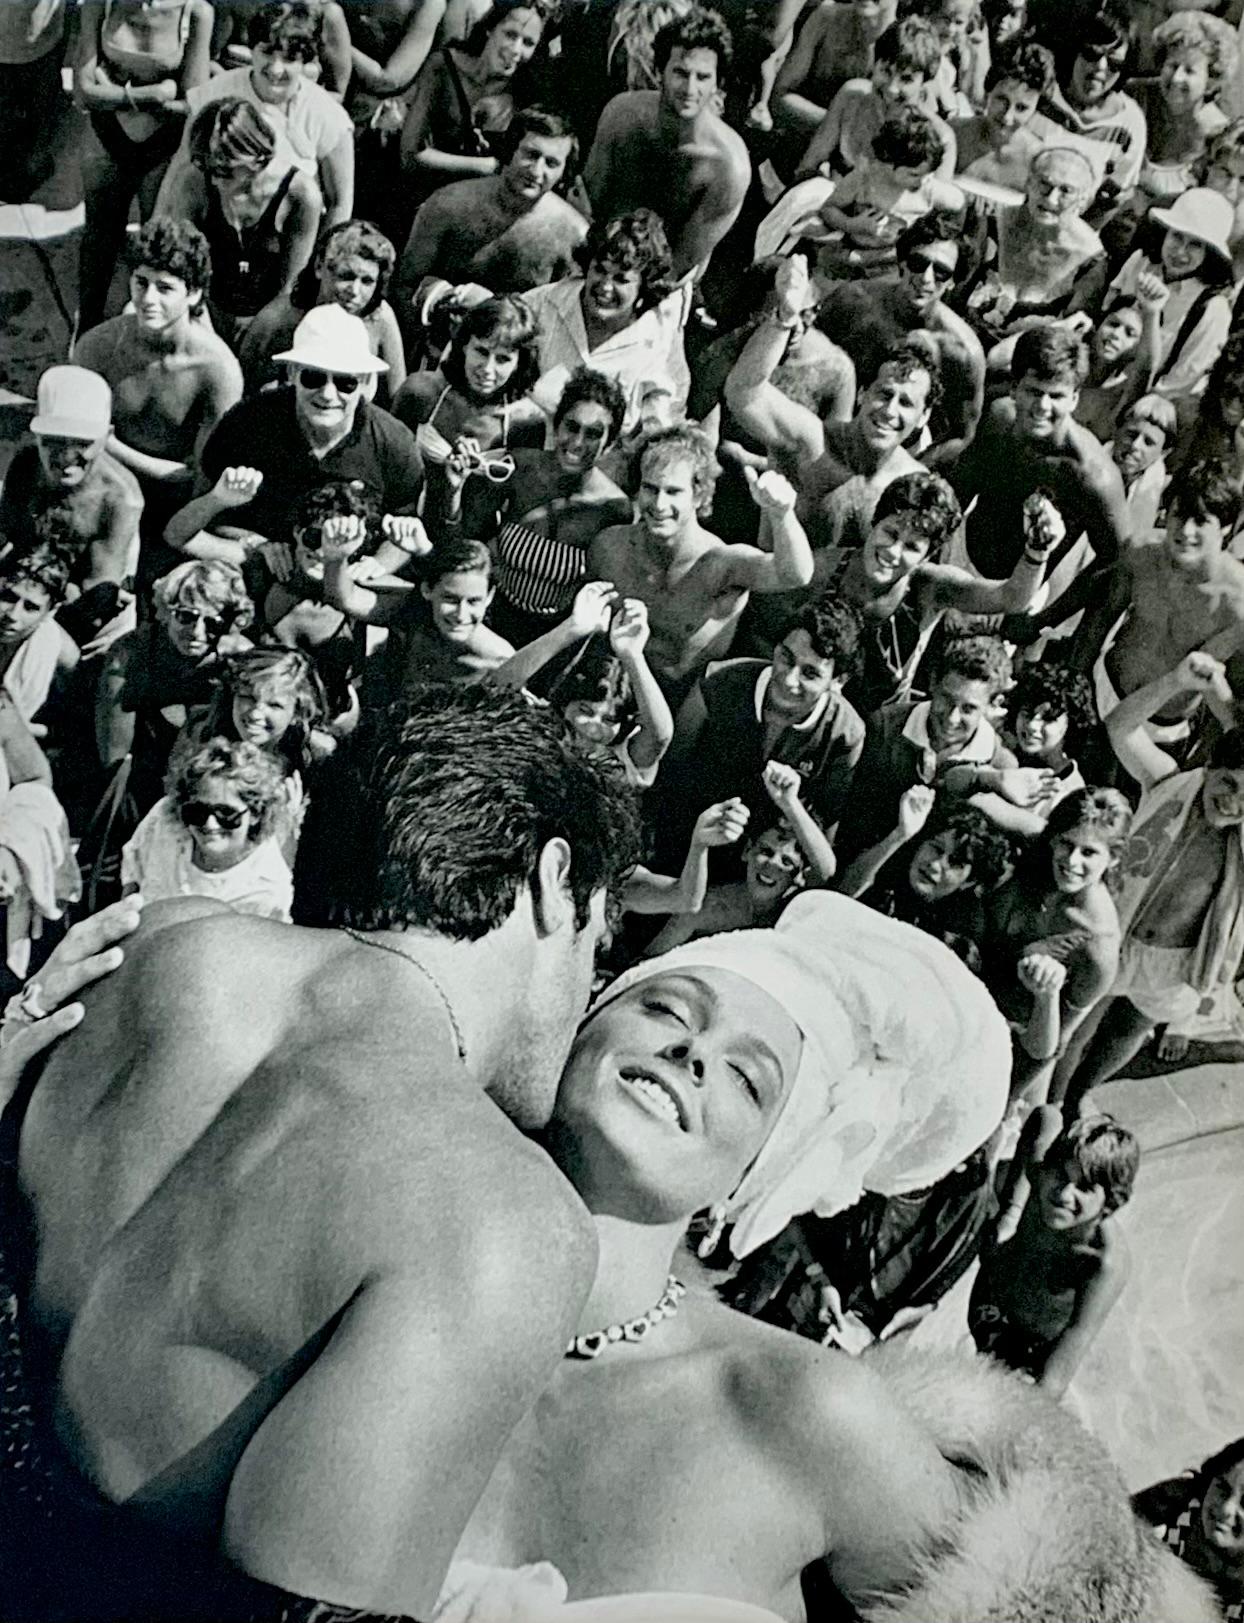 Sylvester Stallone et Brigitte Nielsen 1985
par Herb Ritts

La superstar Sylvester Stalone embrasse l'actrice danoise Bridgette Neilsen devant la foule.

Non encadré
Matted
Taille totale : 41 x 51 cm / 16 x 20" inches
Taille de l'image : 10.75" x